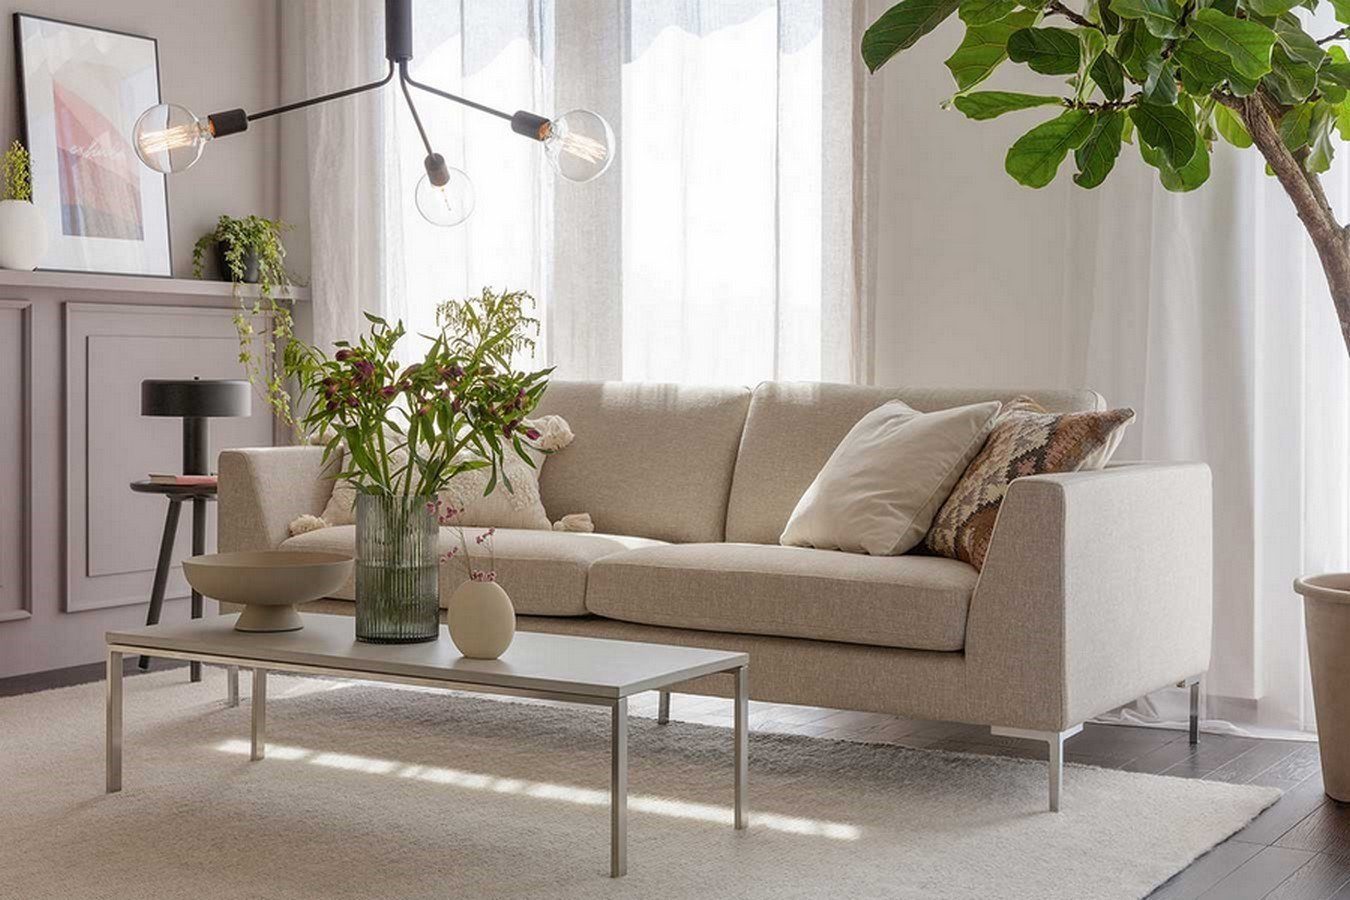 Stoff living Oslo Sitzer daslagerhaus Big-Sofa Sofa orange 3,5 Premium